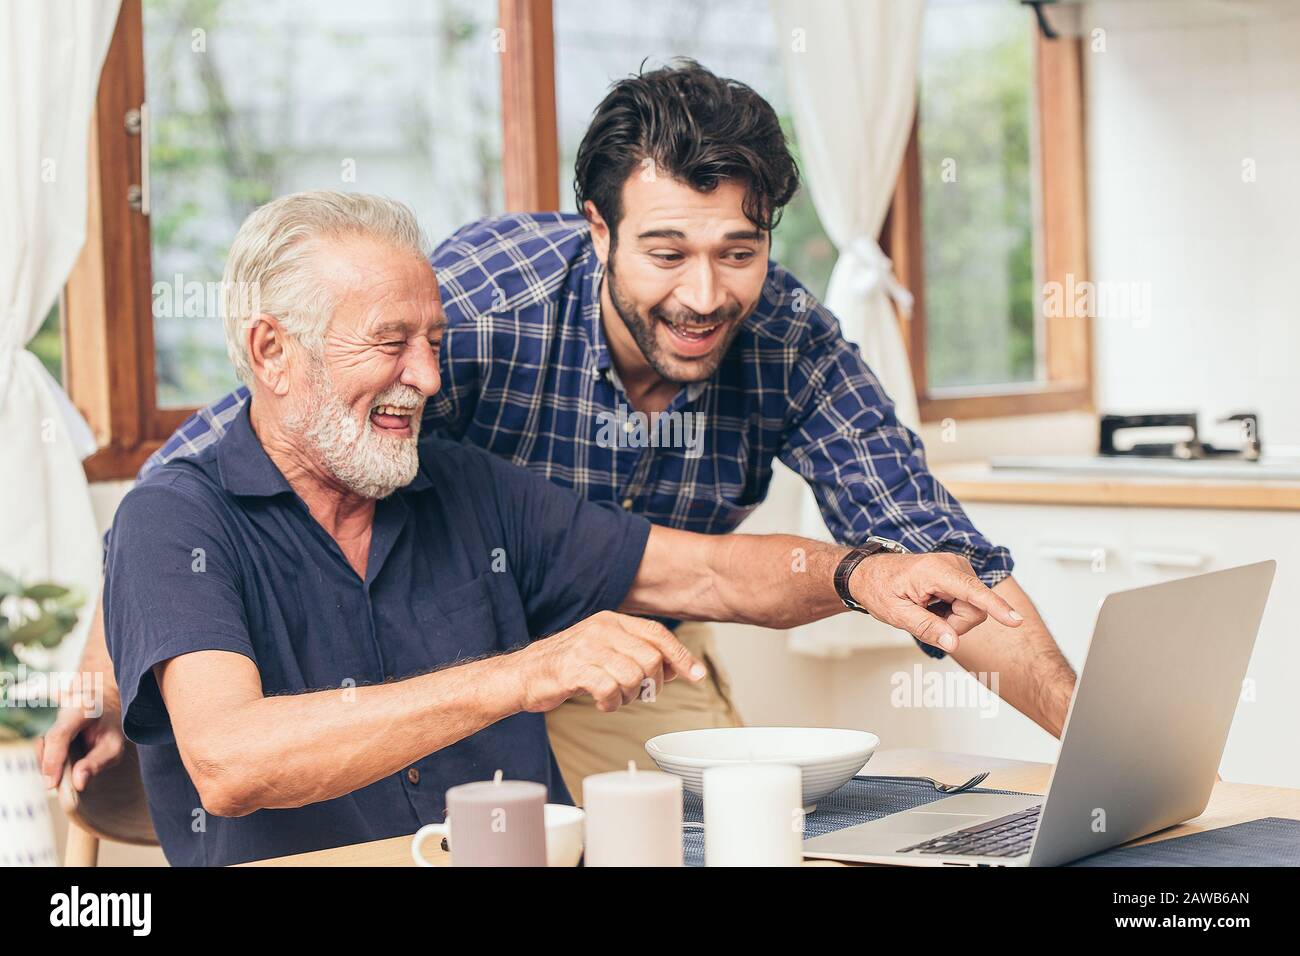 il sorriso divertente del vecchio uomo felice di osservare il laptop con il figlio. usando la tecnologia di comunicazione per felicità della famiglia l'assistenza domestica del anziano al collegamento altro concetto Foto Stock